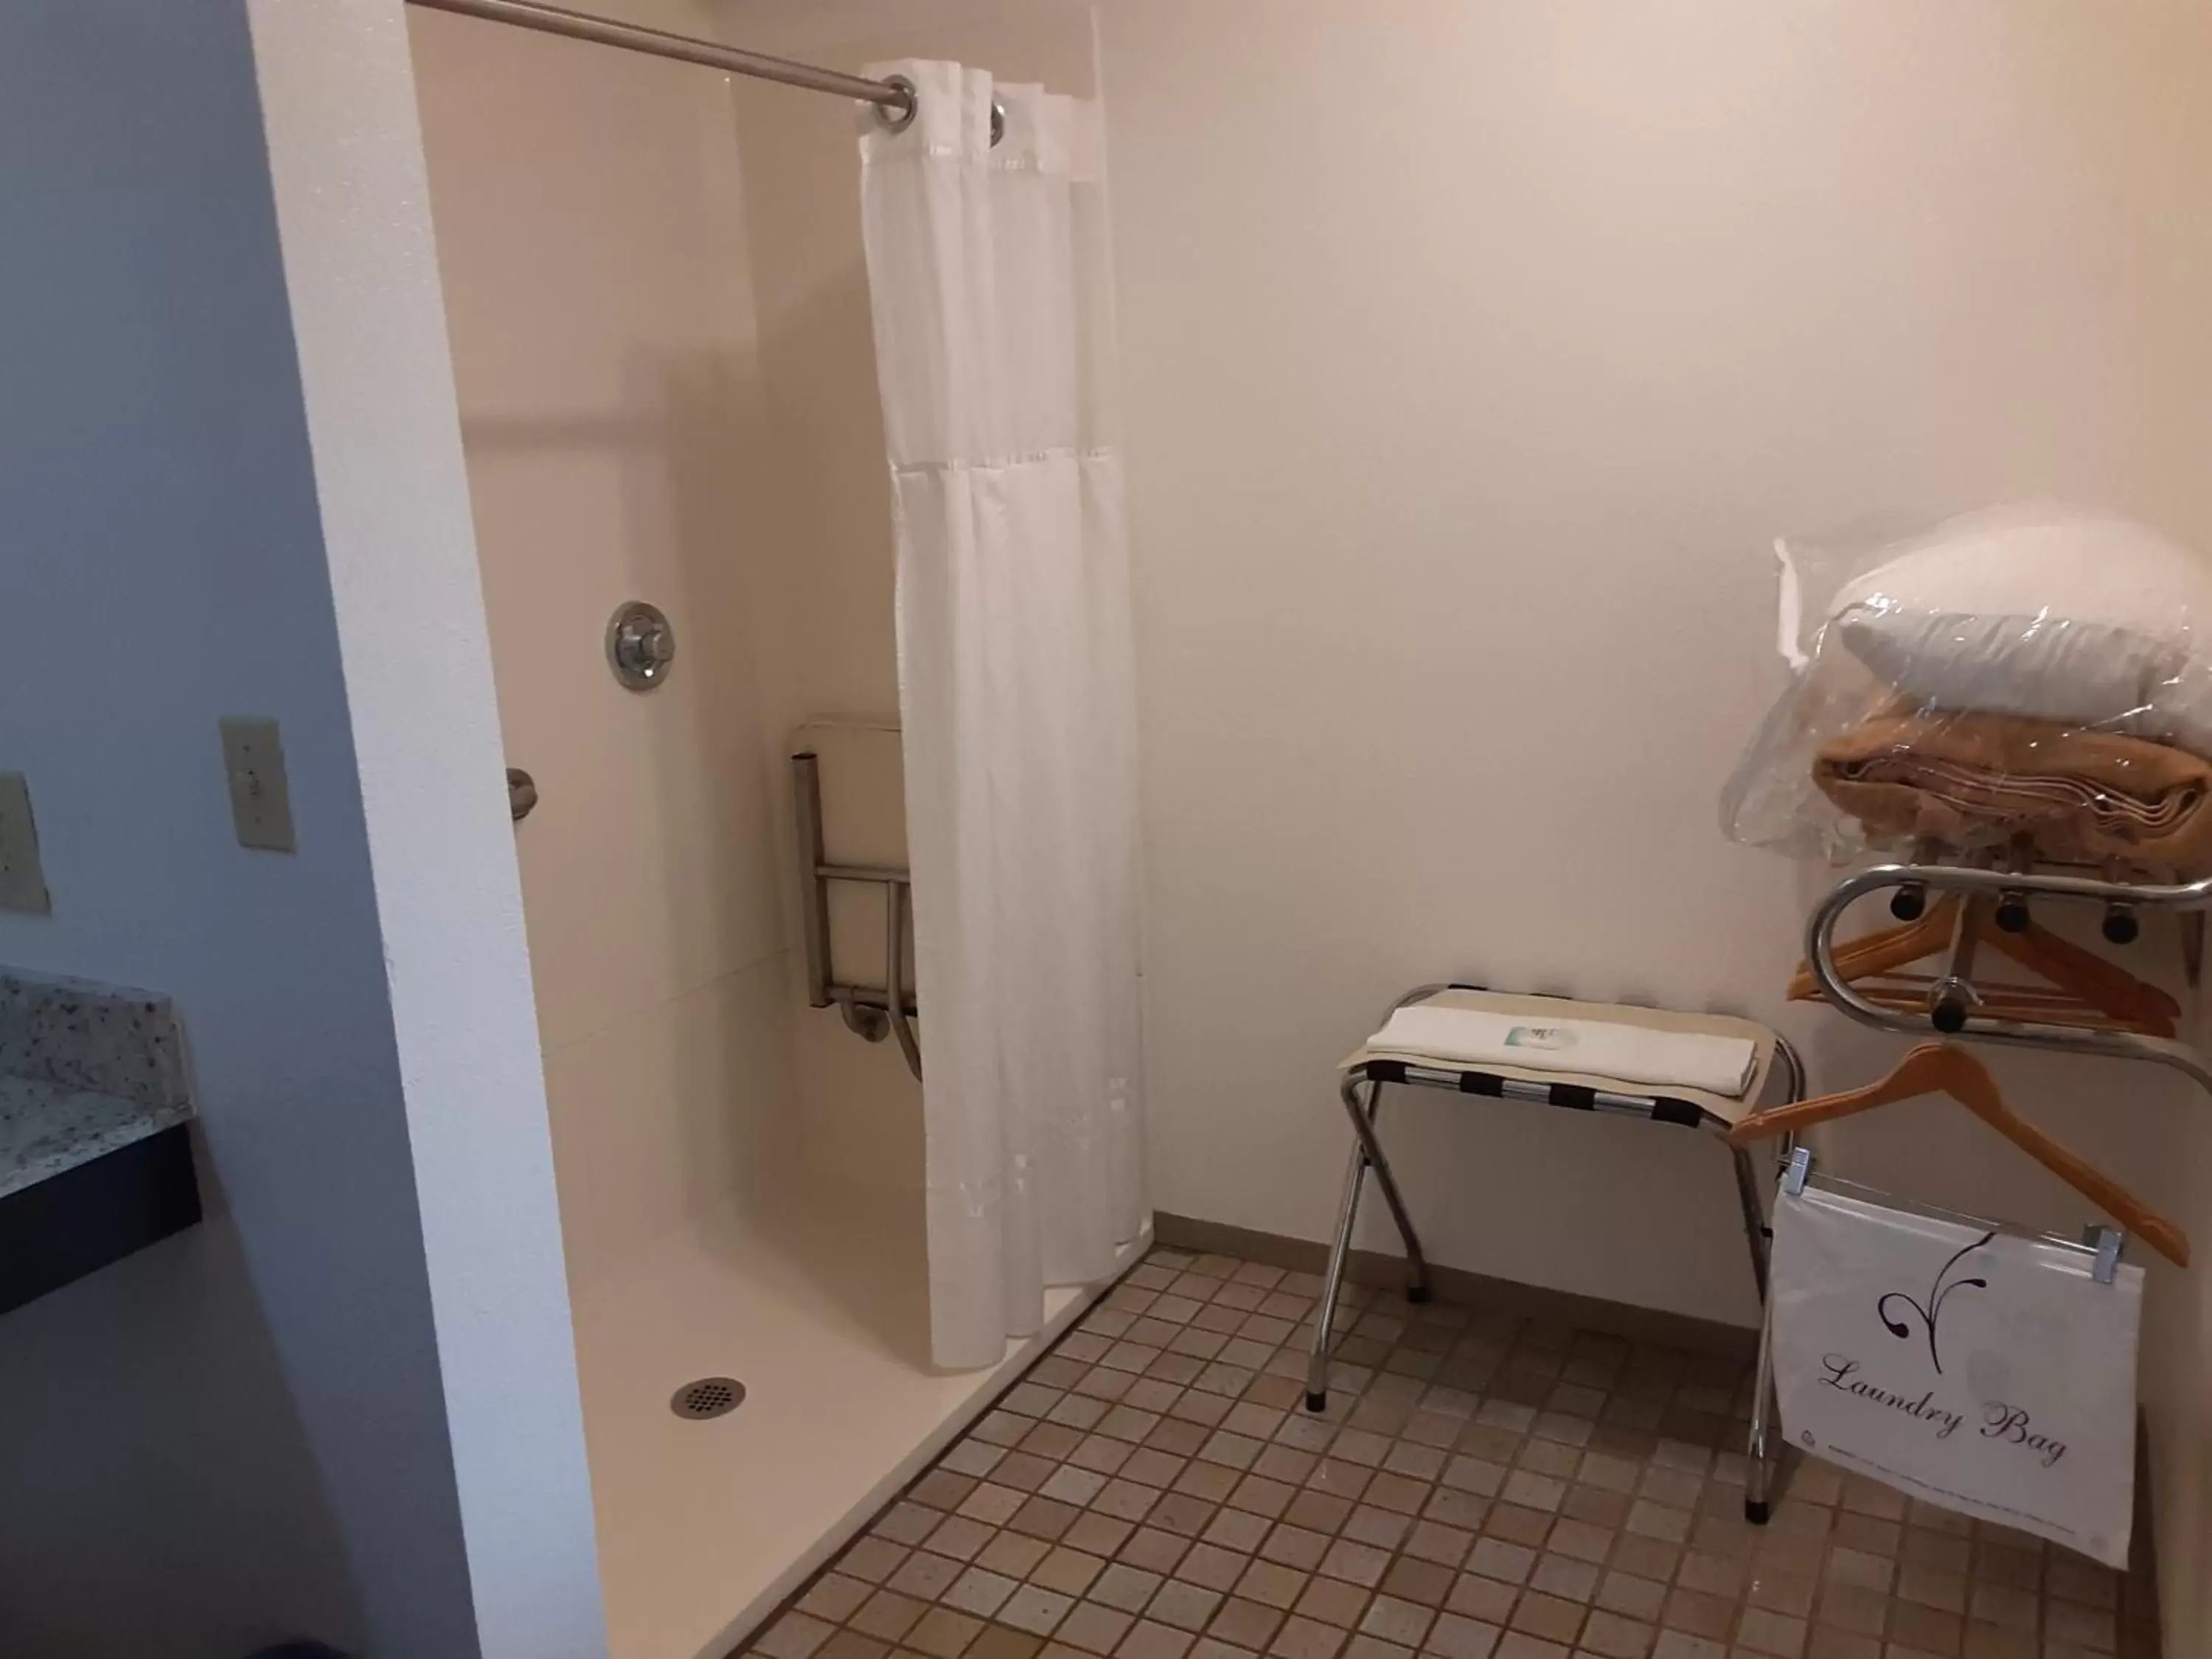 Bathroom in Mission Inn